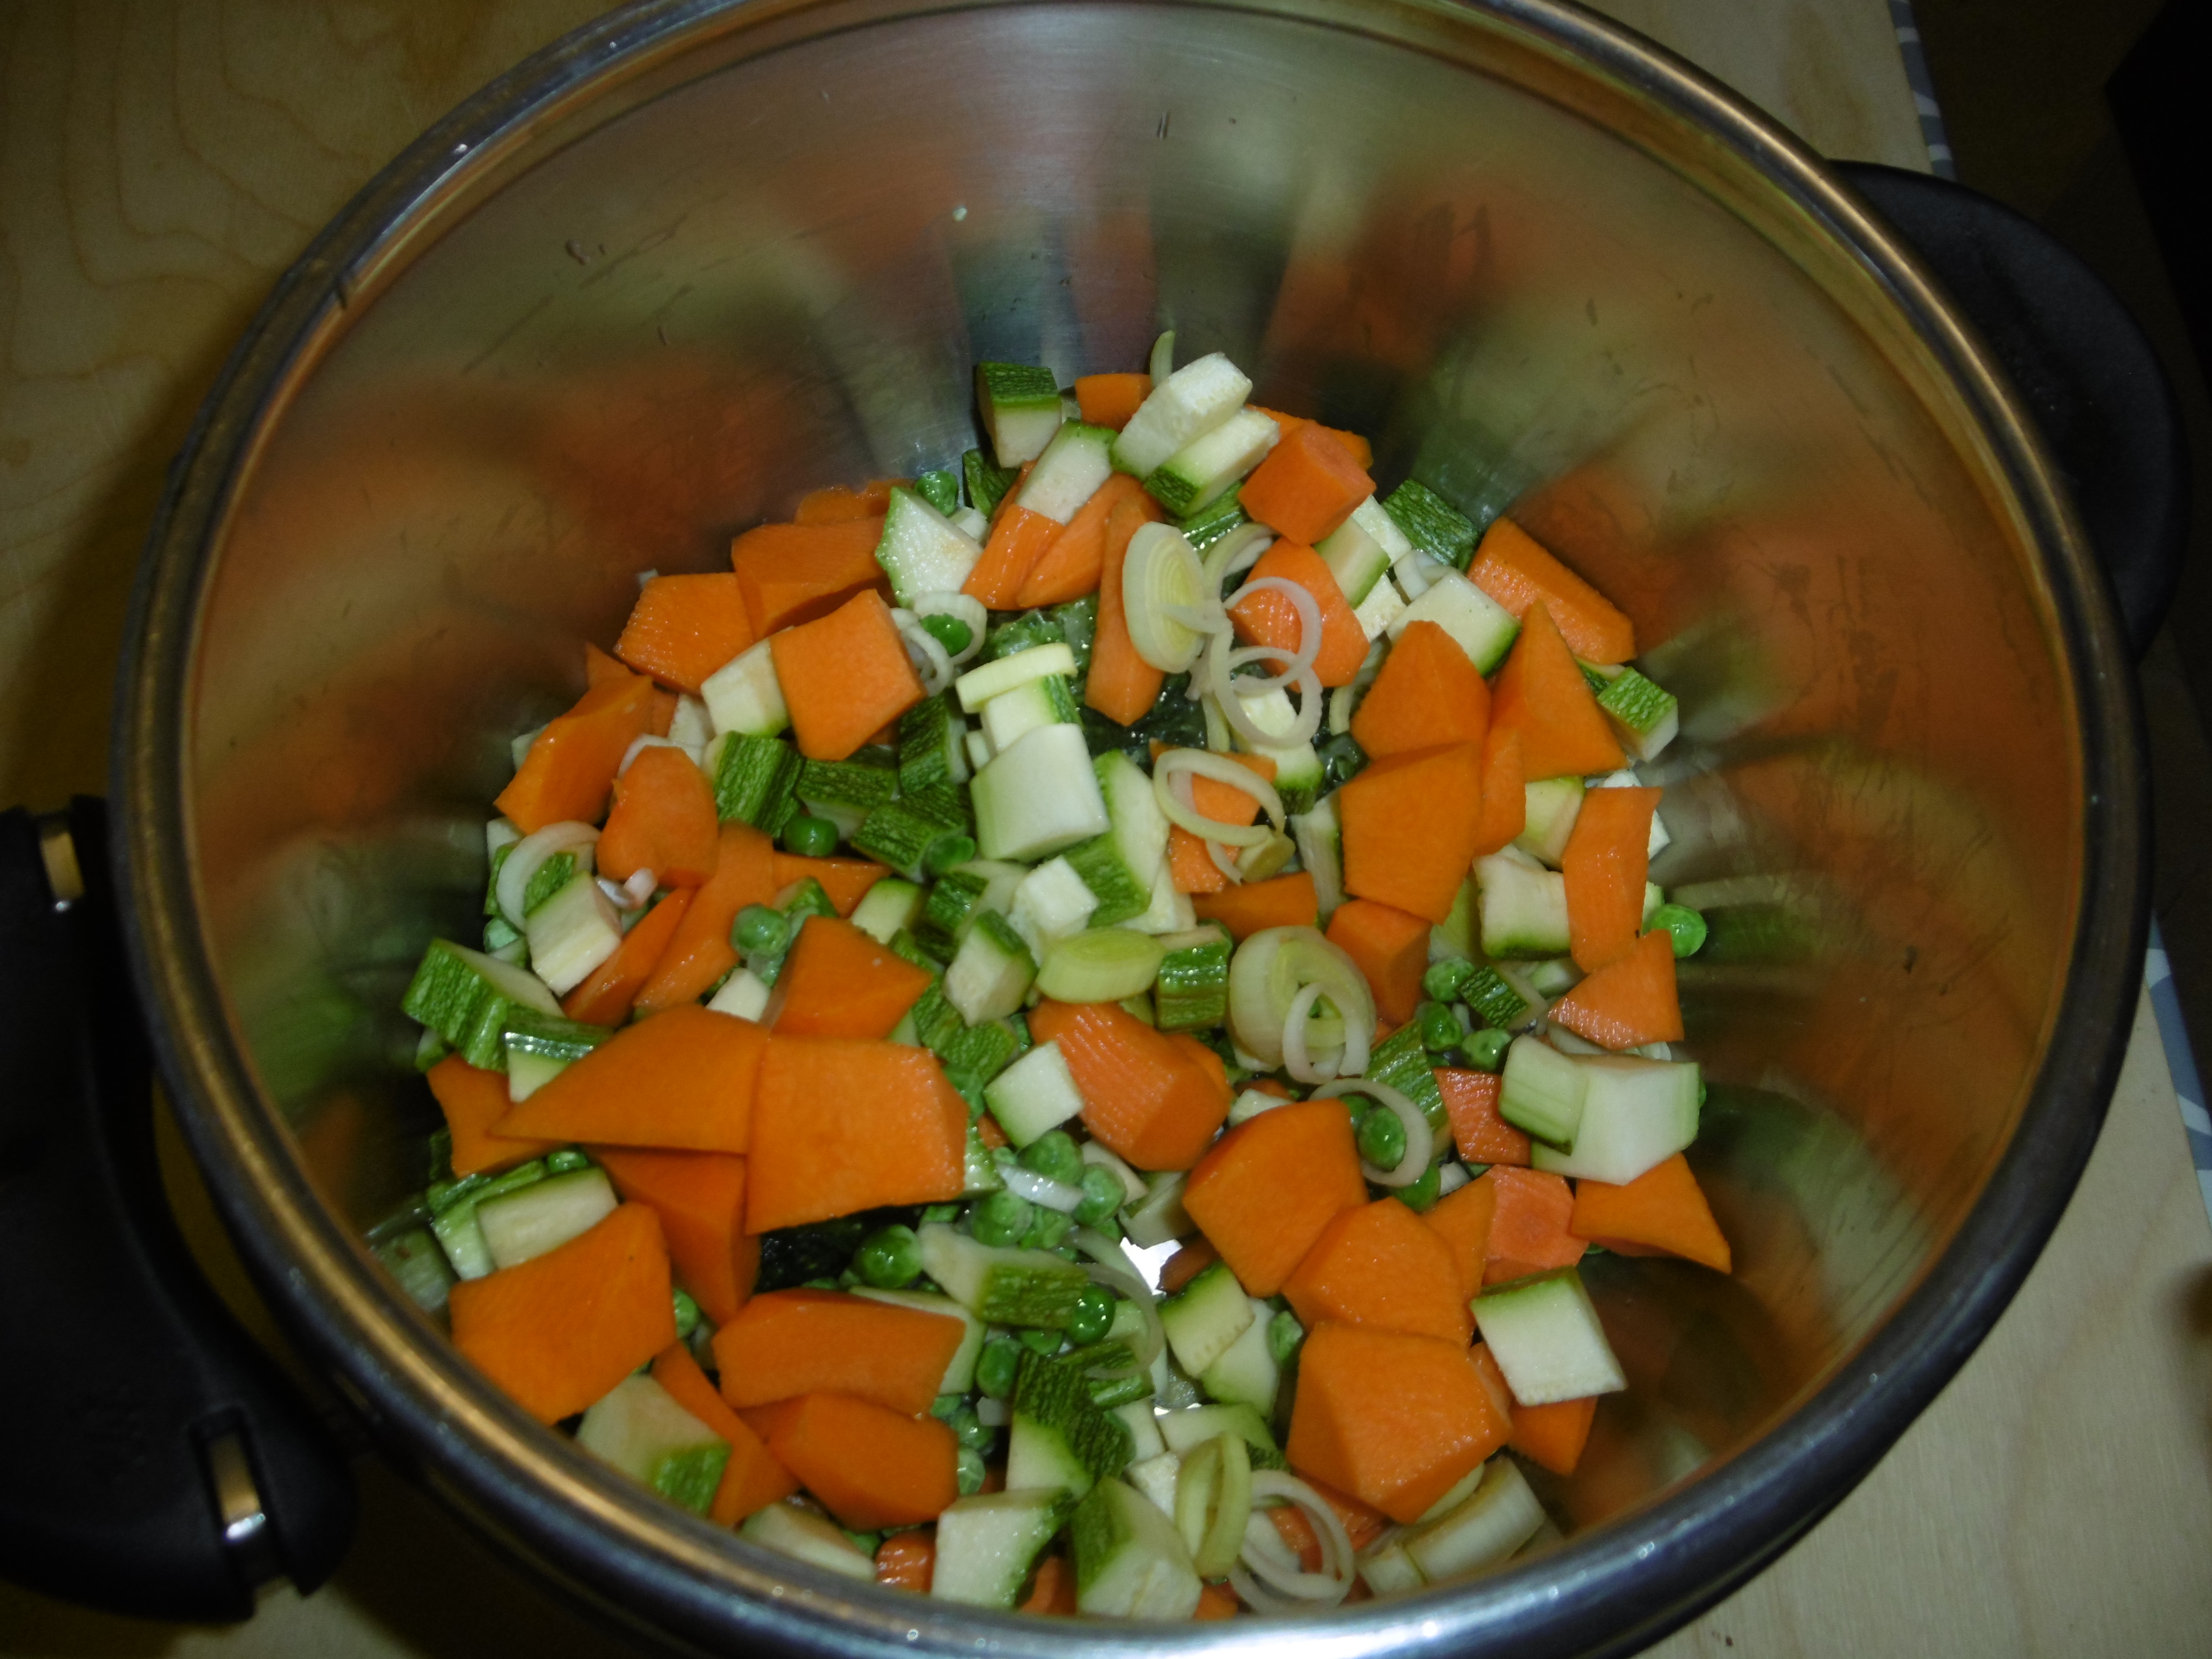 Brodo di verdure in pentola a pressione - Verdure tagliate